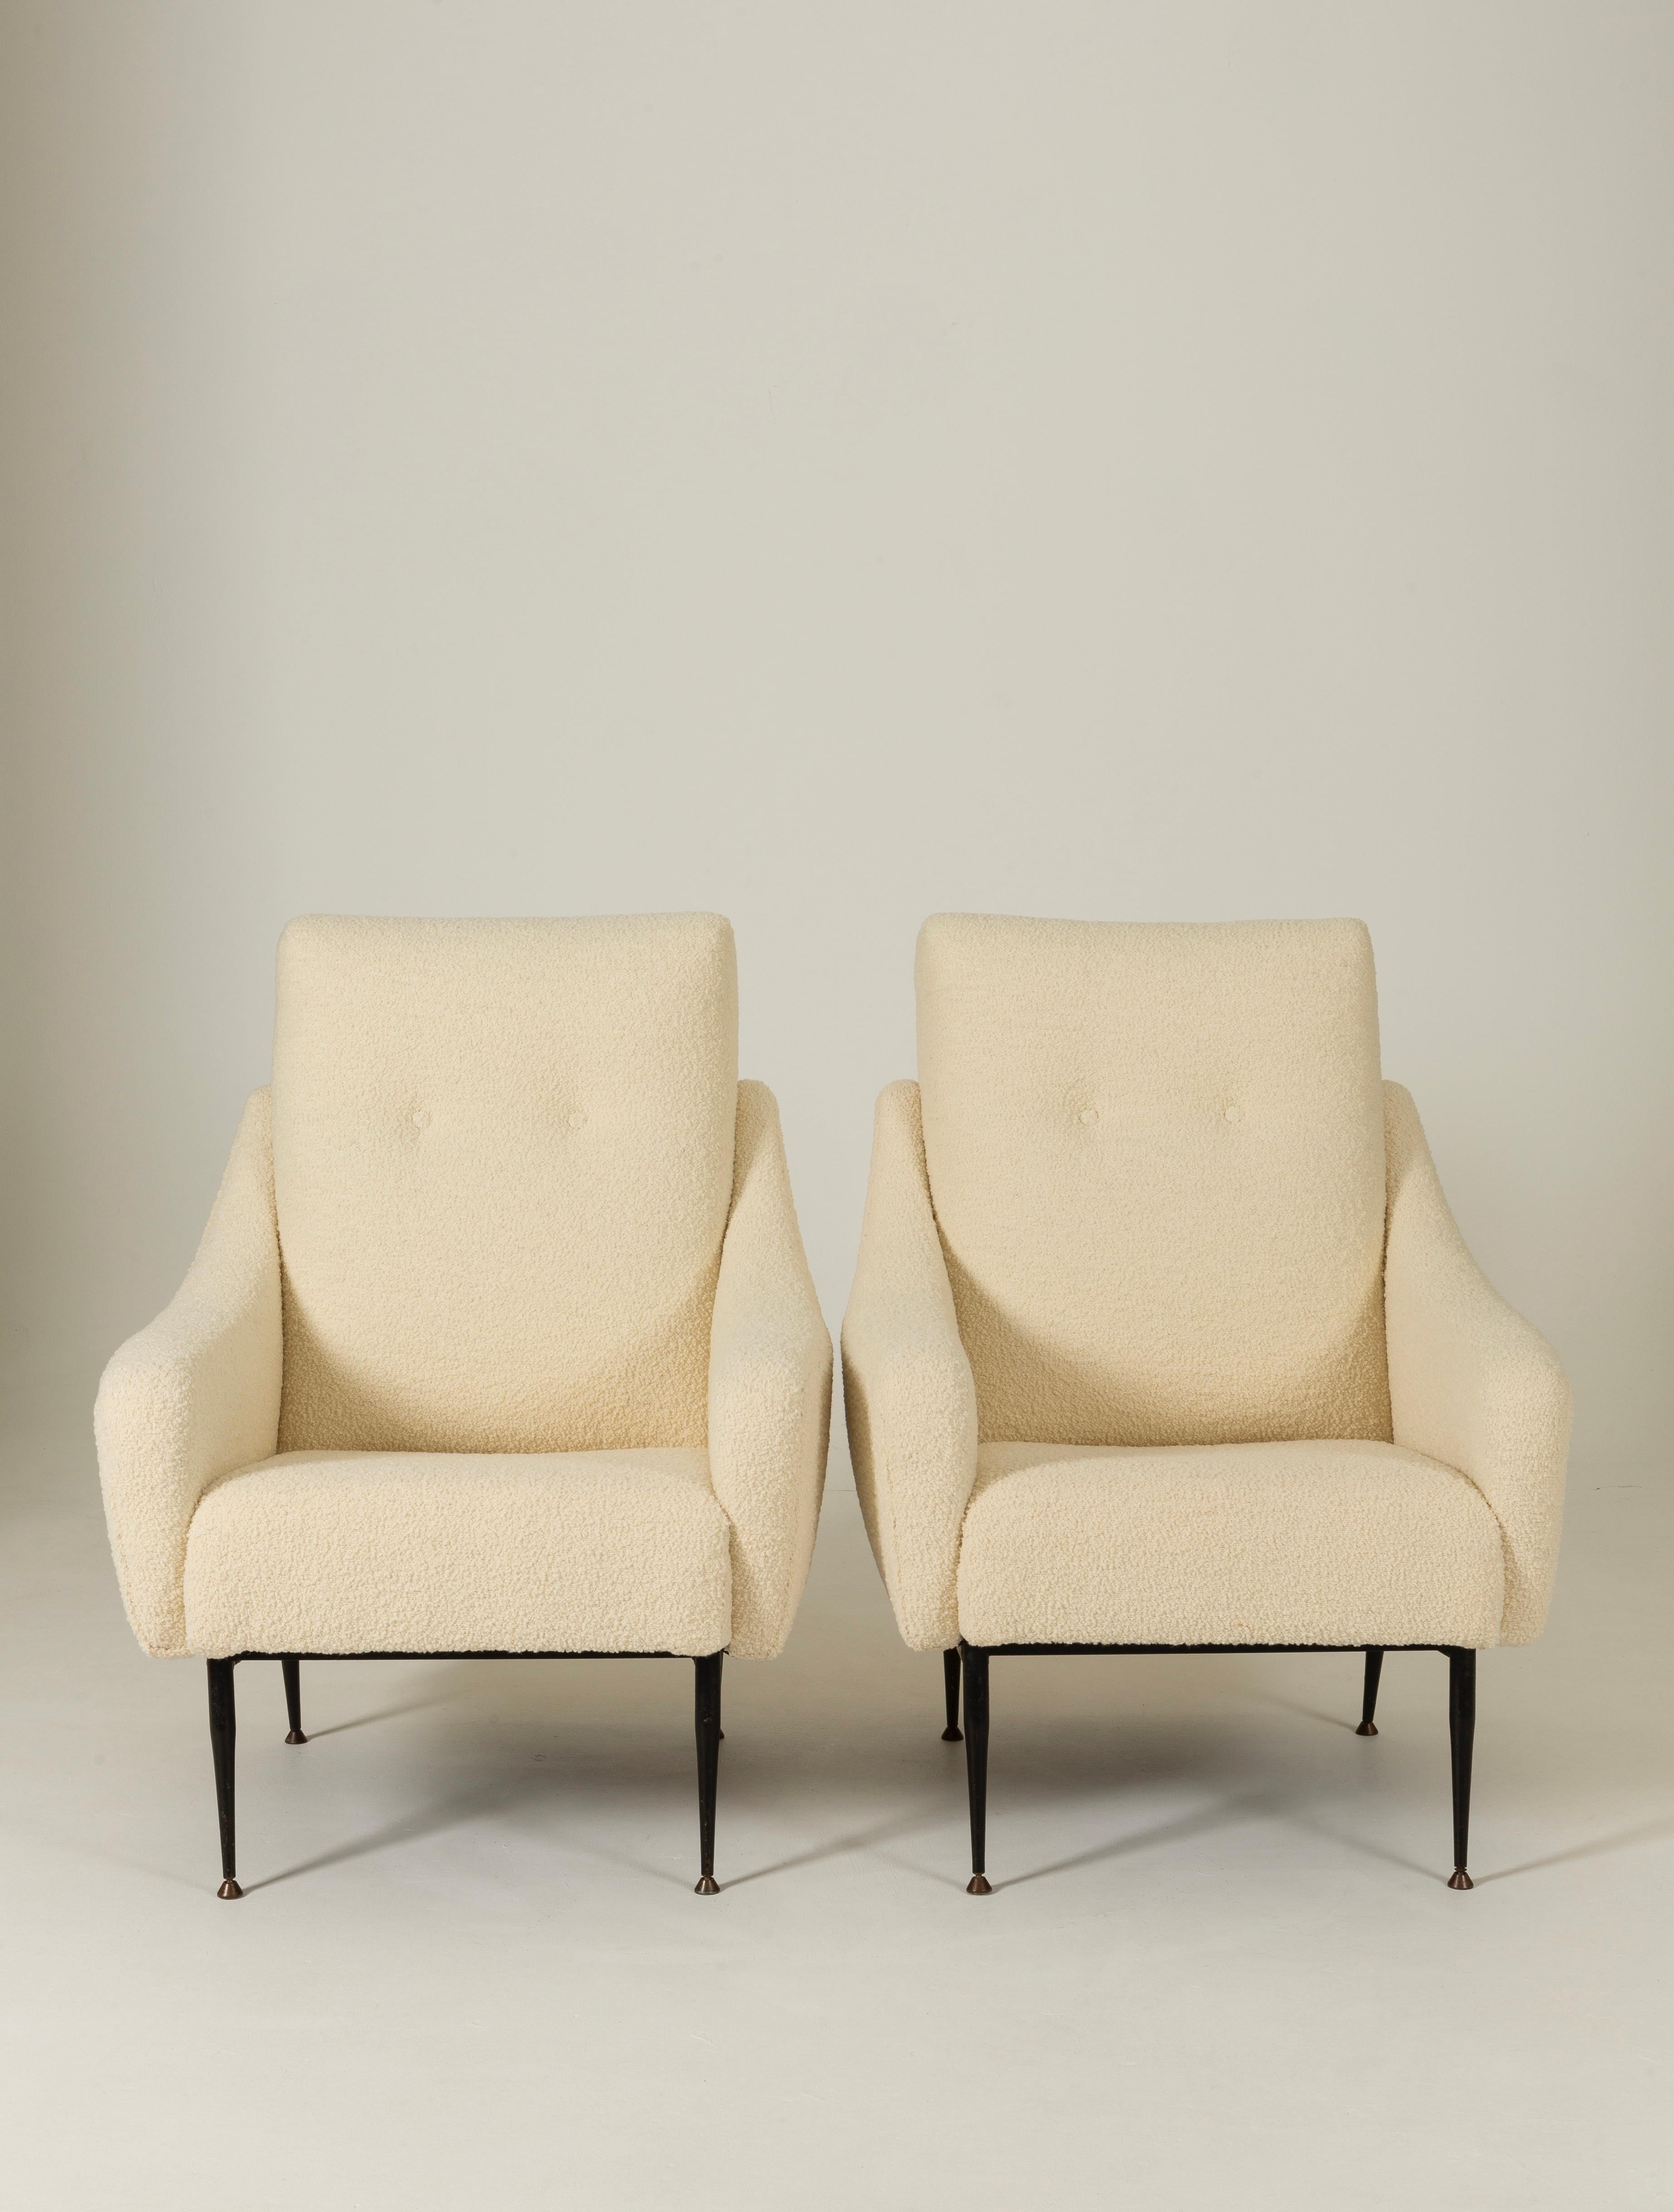 Paire de fauteuils italiens vers 1950. Cette paire de fauteuils italiens a été entièrement restaurée et tapissée dans un tissu bouclé premium blanc crème. Pieds compas aiguillés.